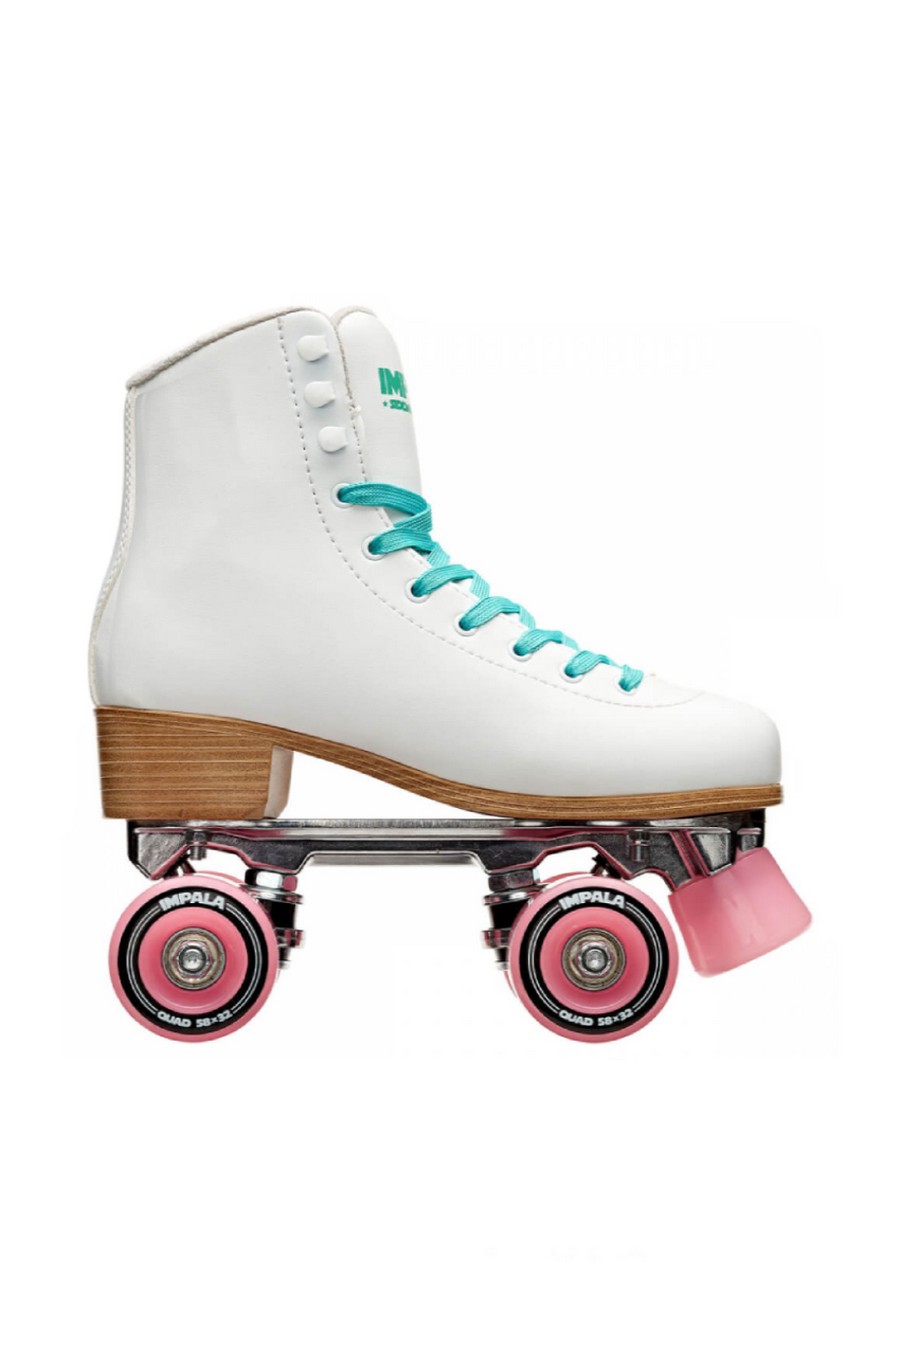 IMPALA In Line Skates QUAD SKATES WHITE - WHITE-IMP43122-122-WHITE 57922